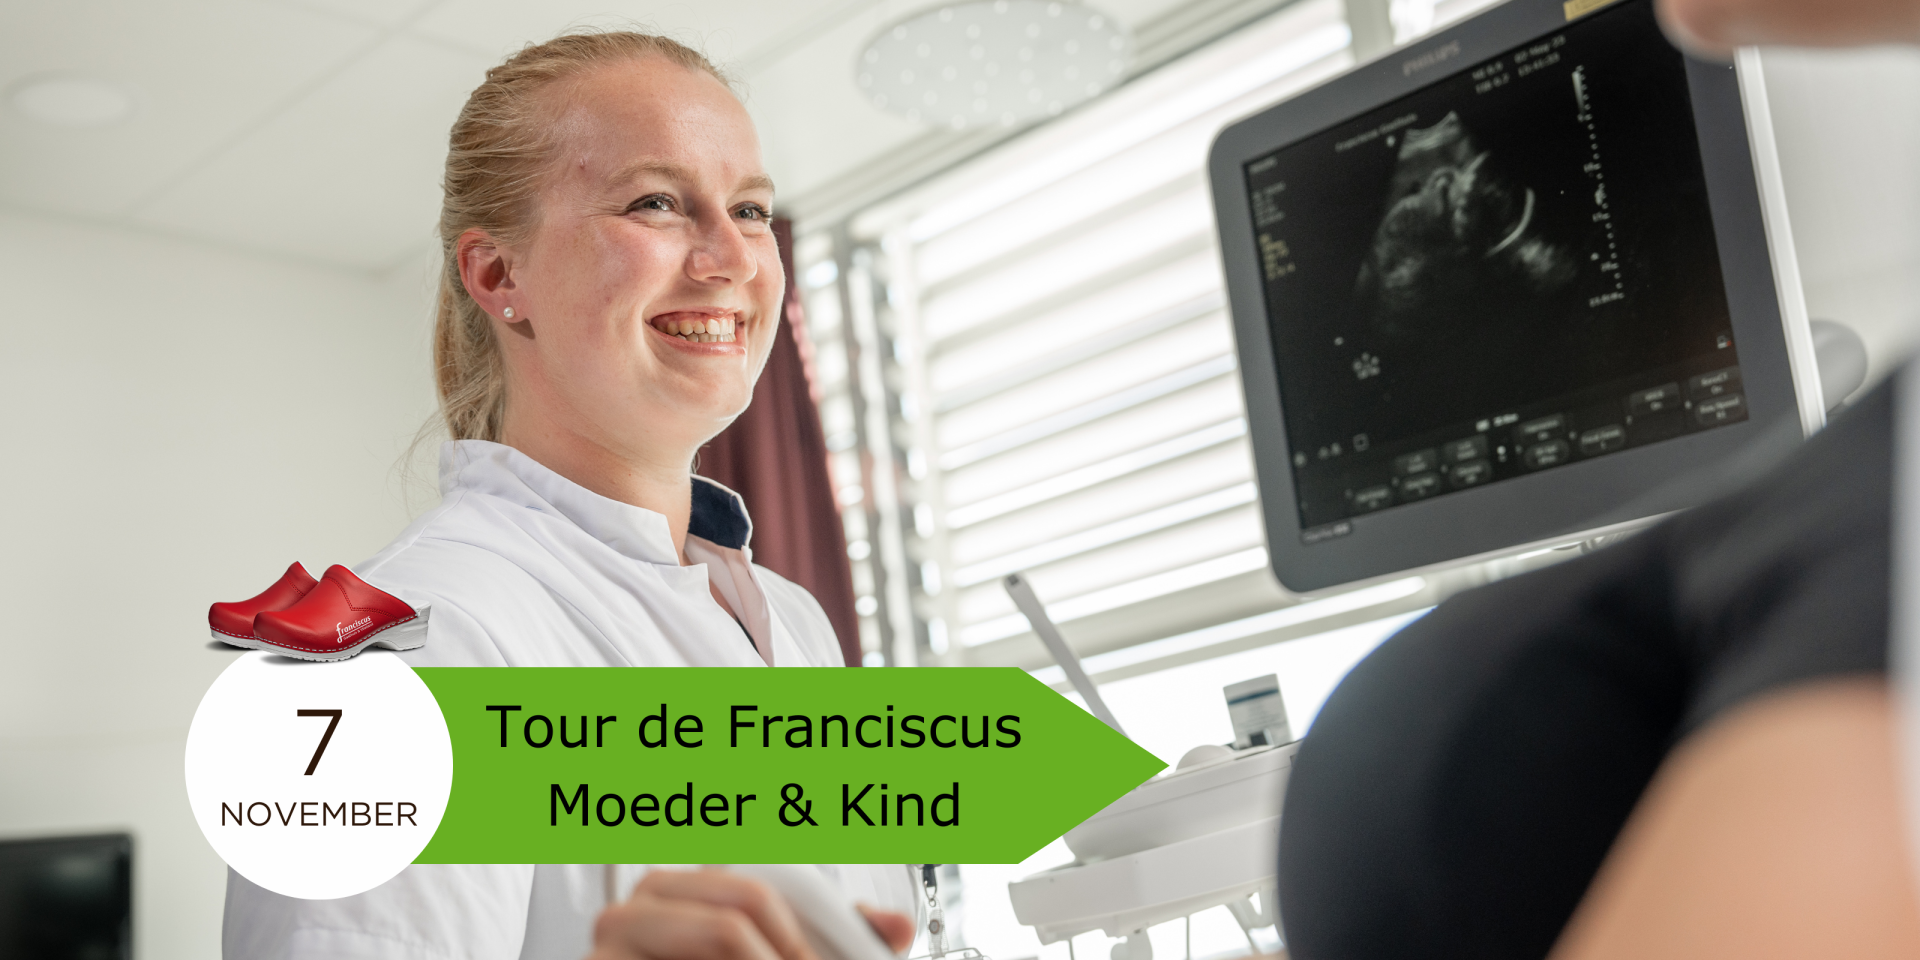 Tour de Franciscus Moeder & Kind